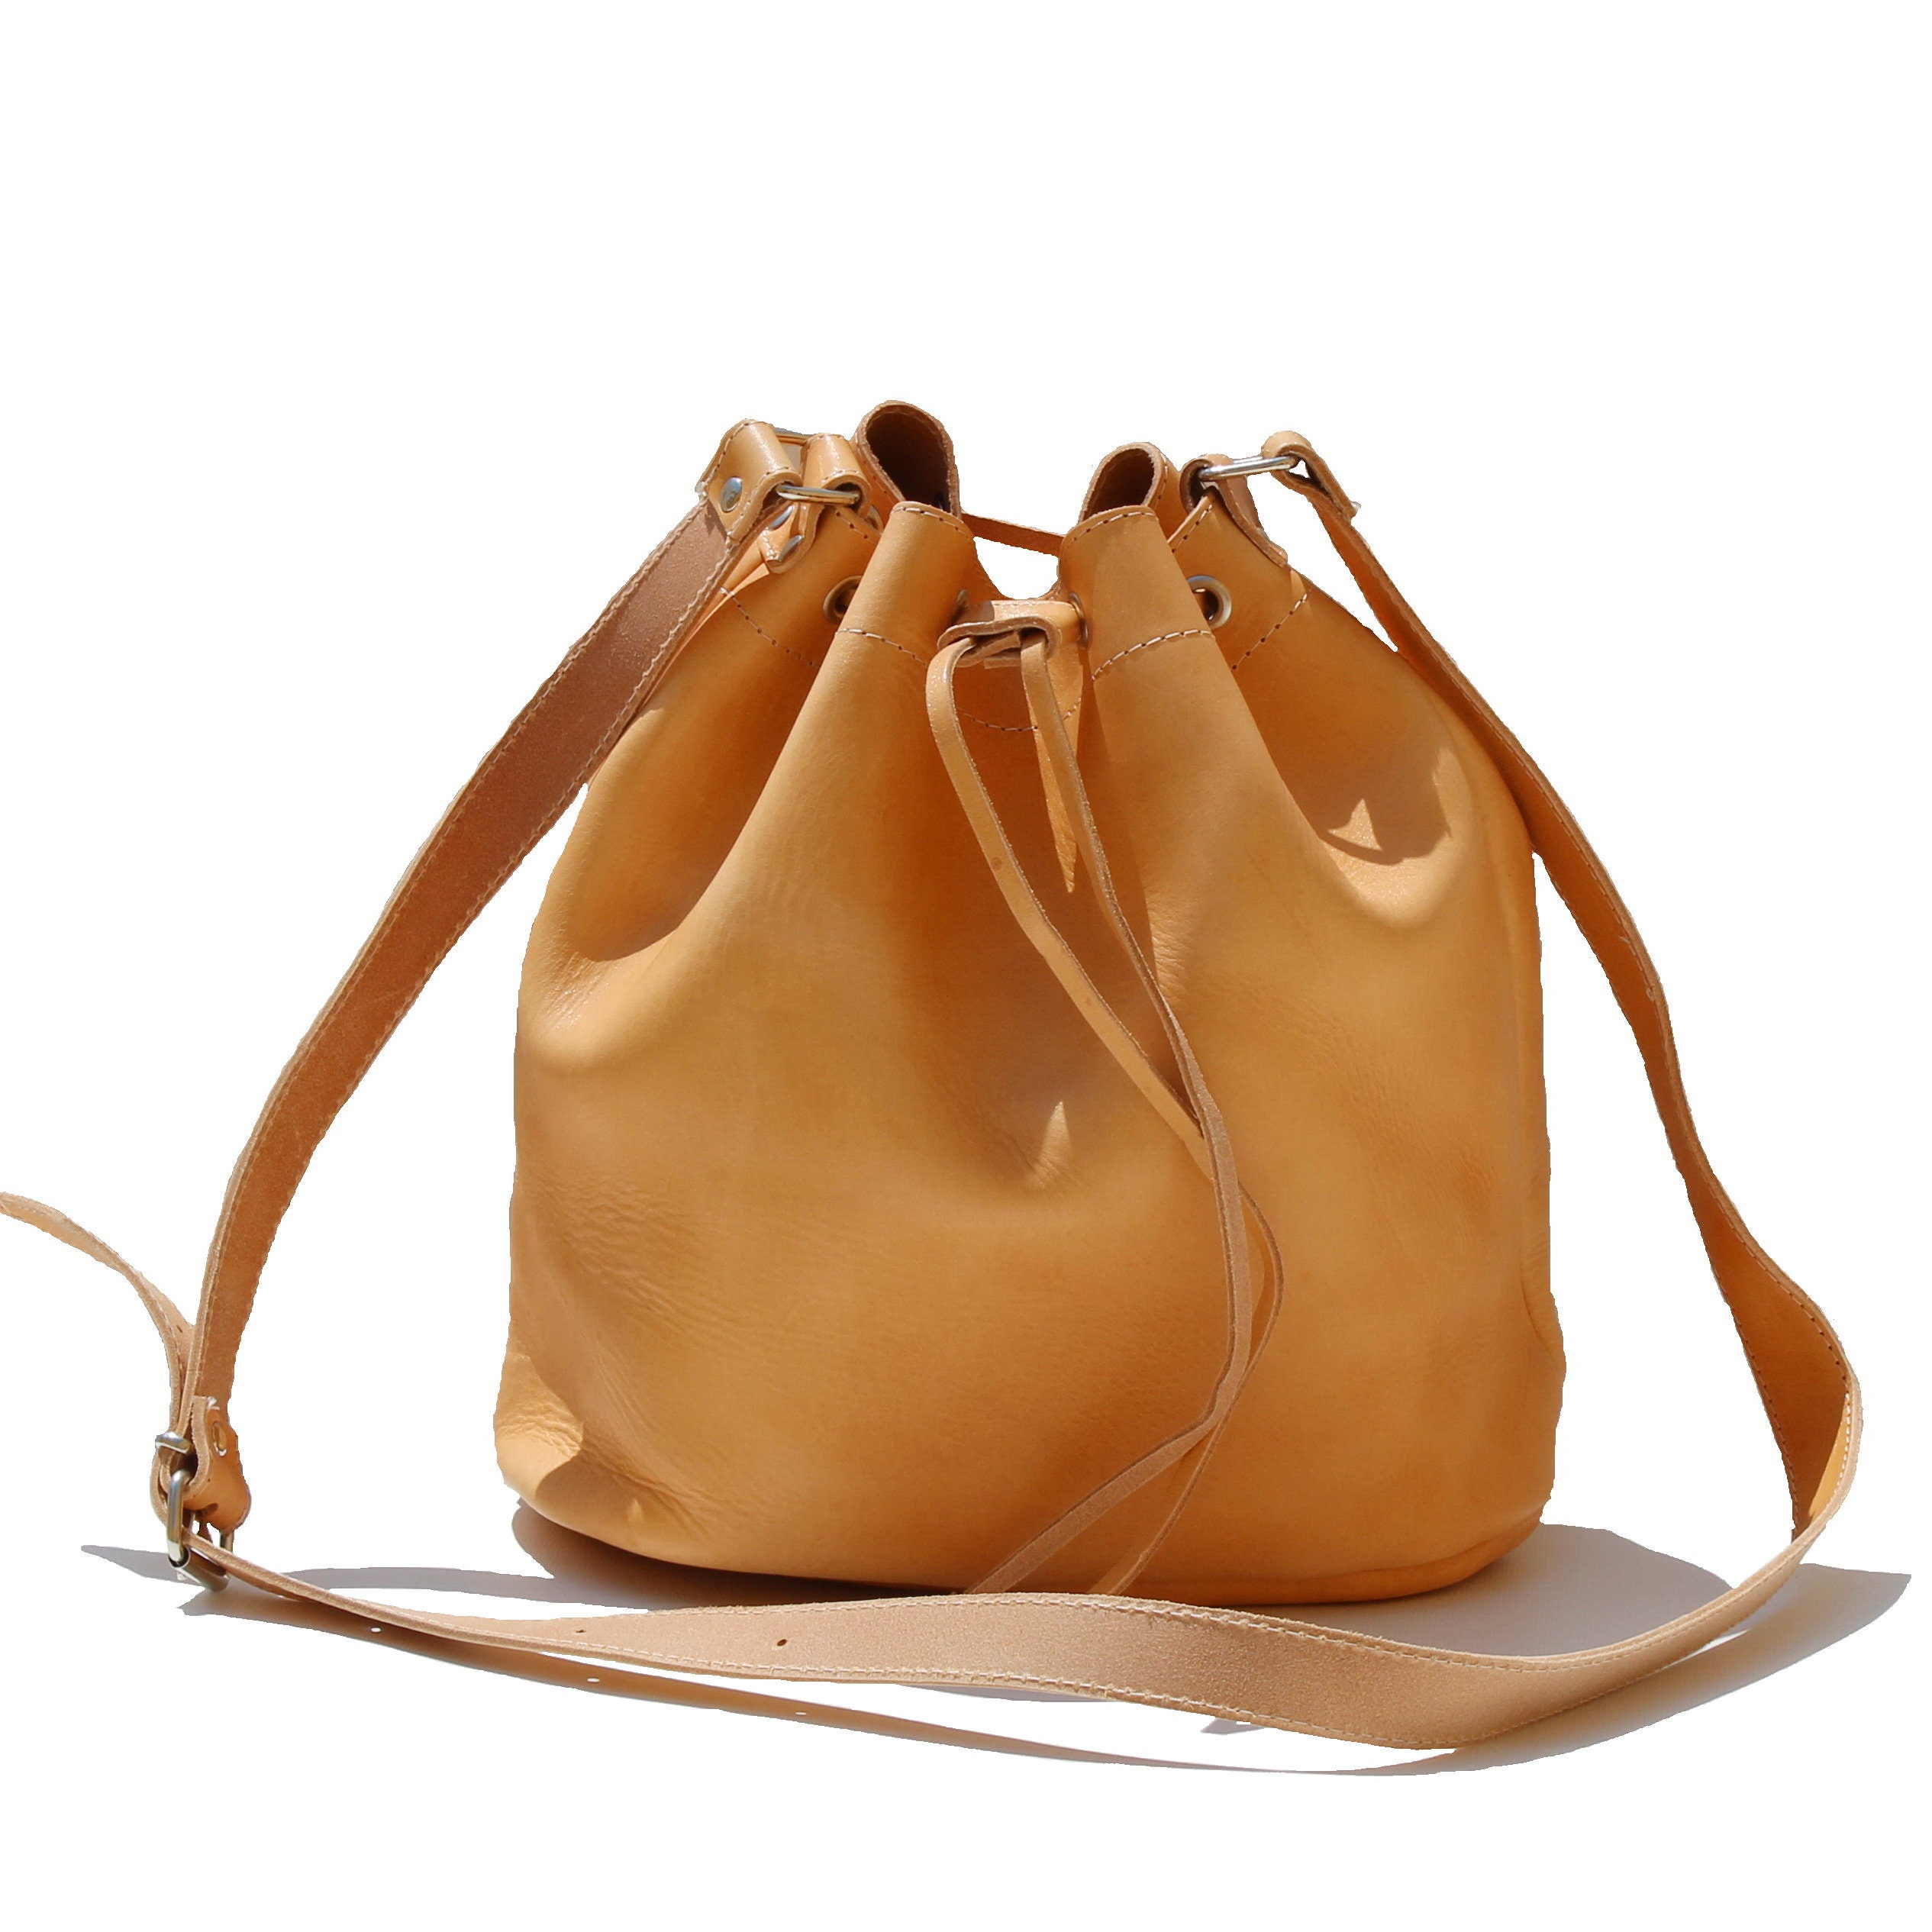 LEATHER BUCKET BAG Naturalsize Large Leather Shoulder Bag - Etsy